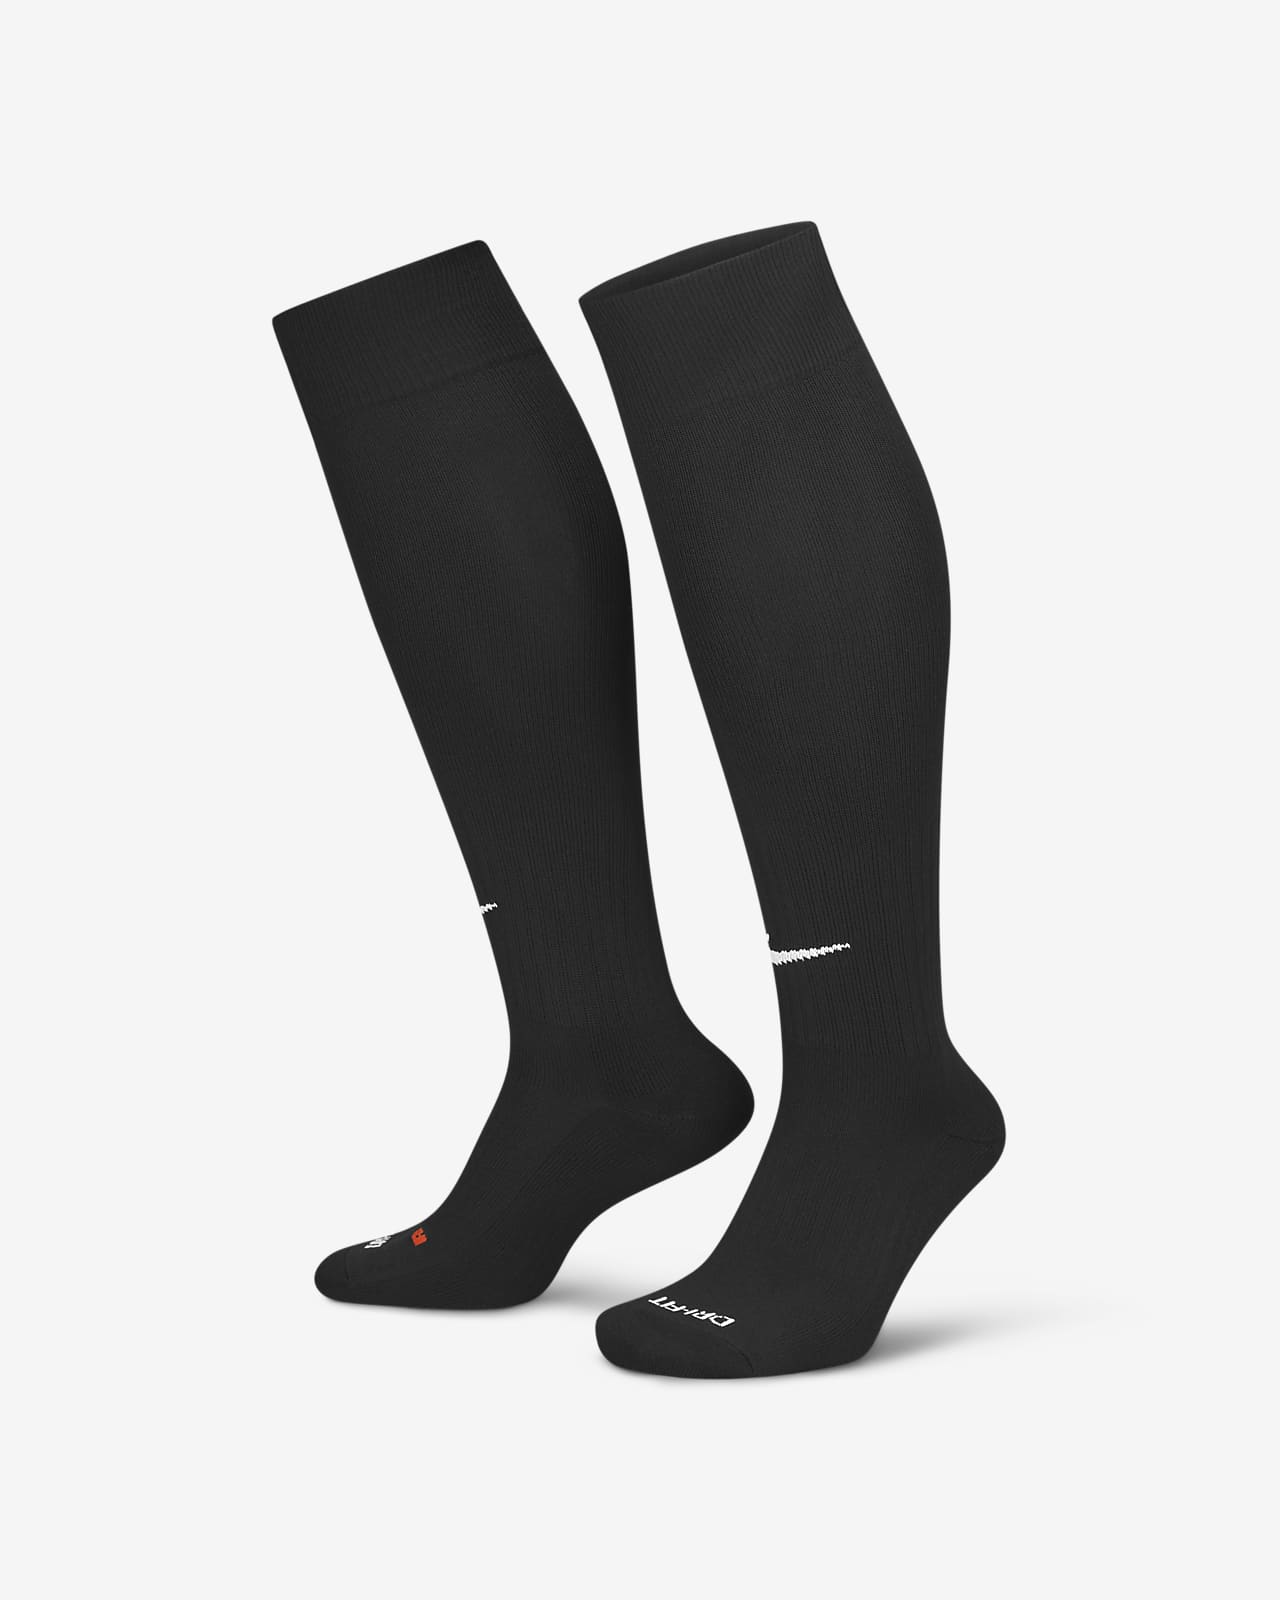 Nike Classic 2 緩震小腿襪